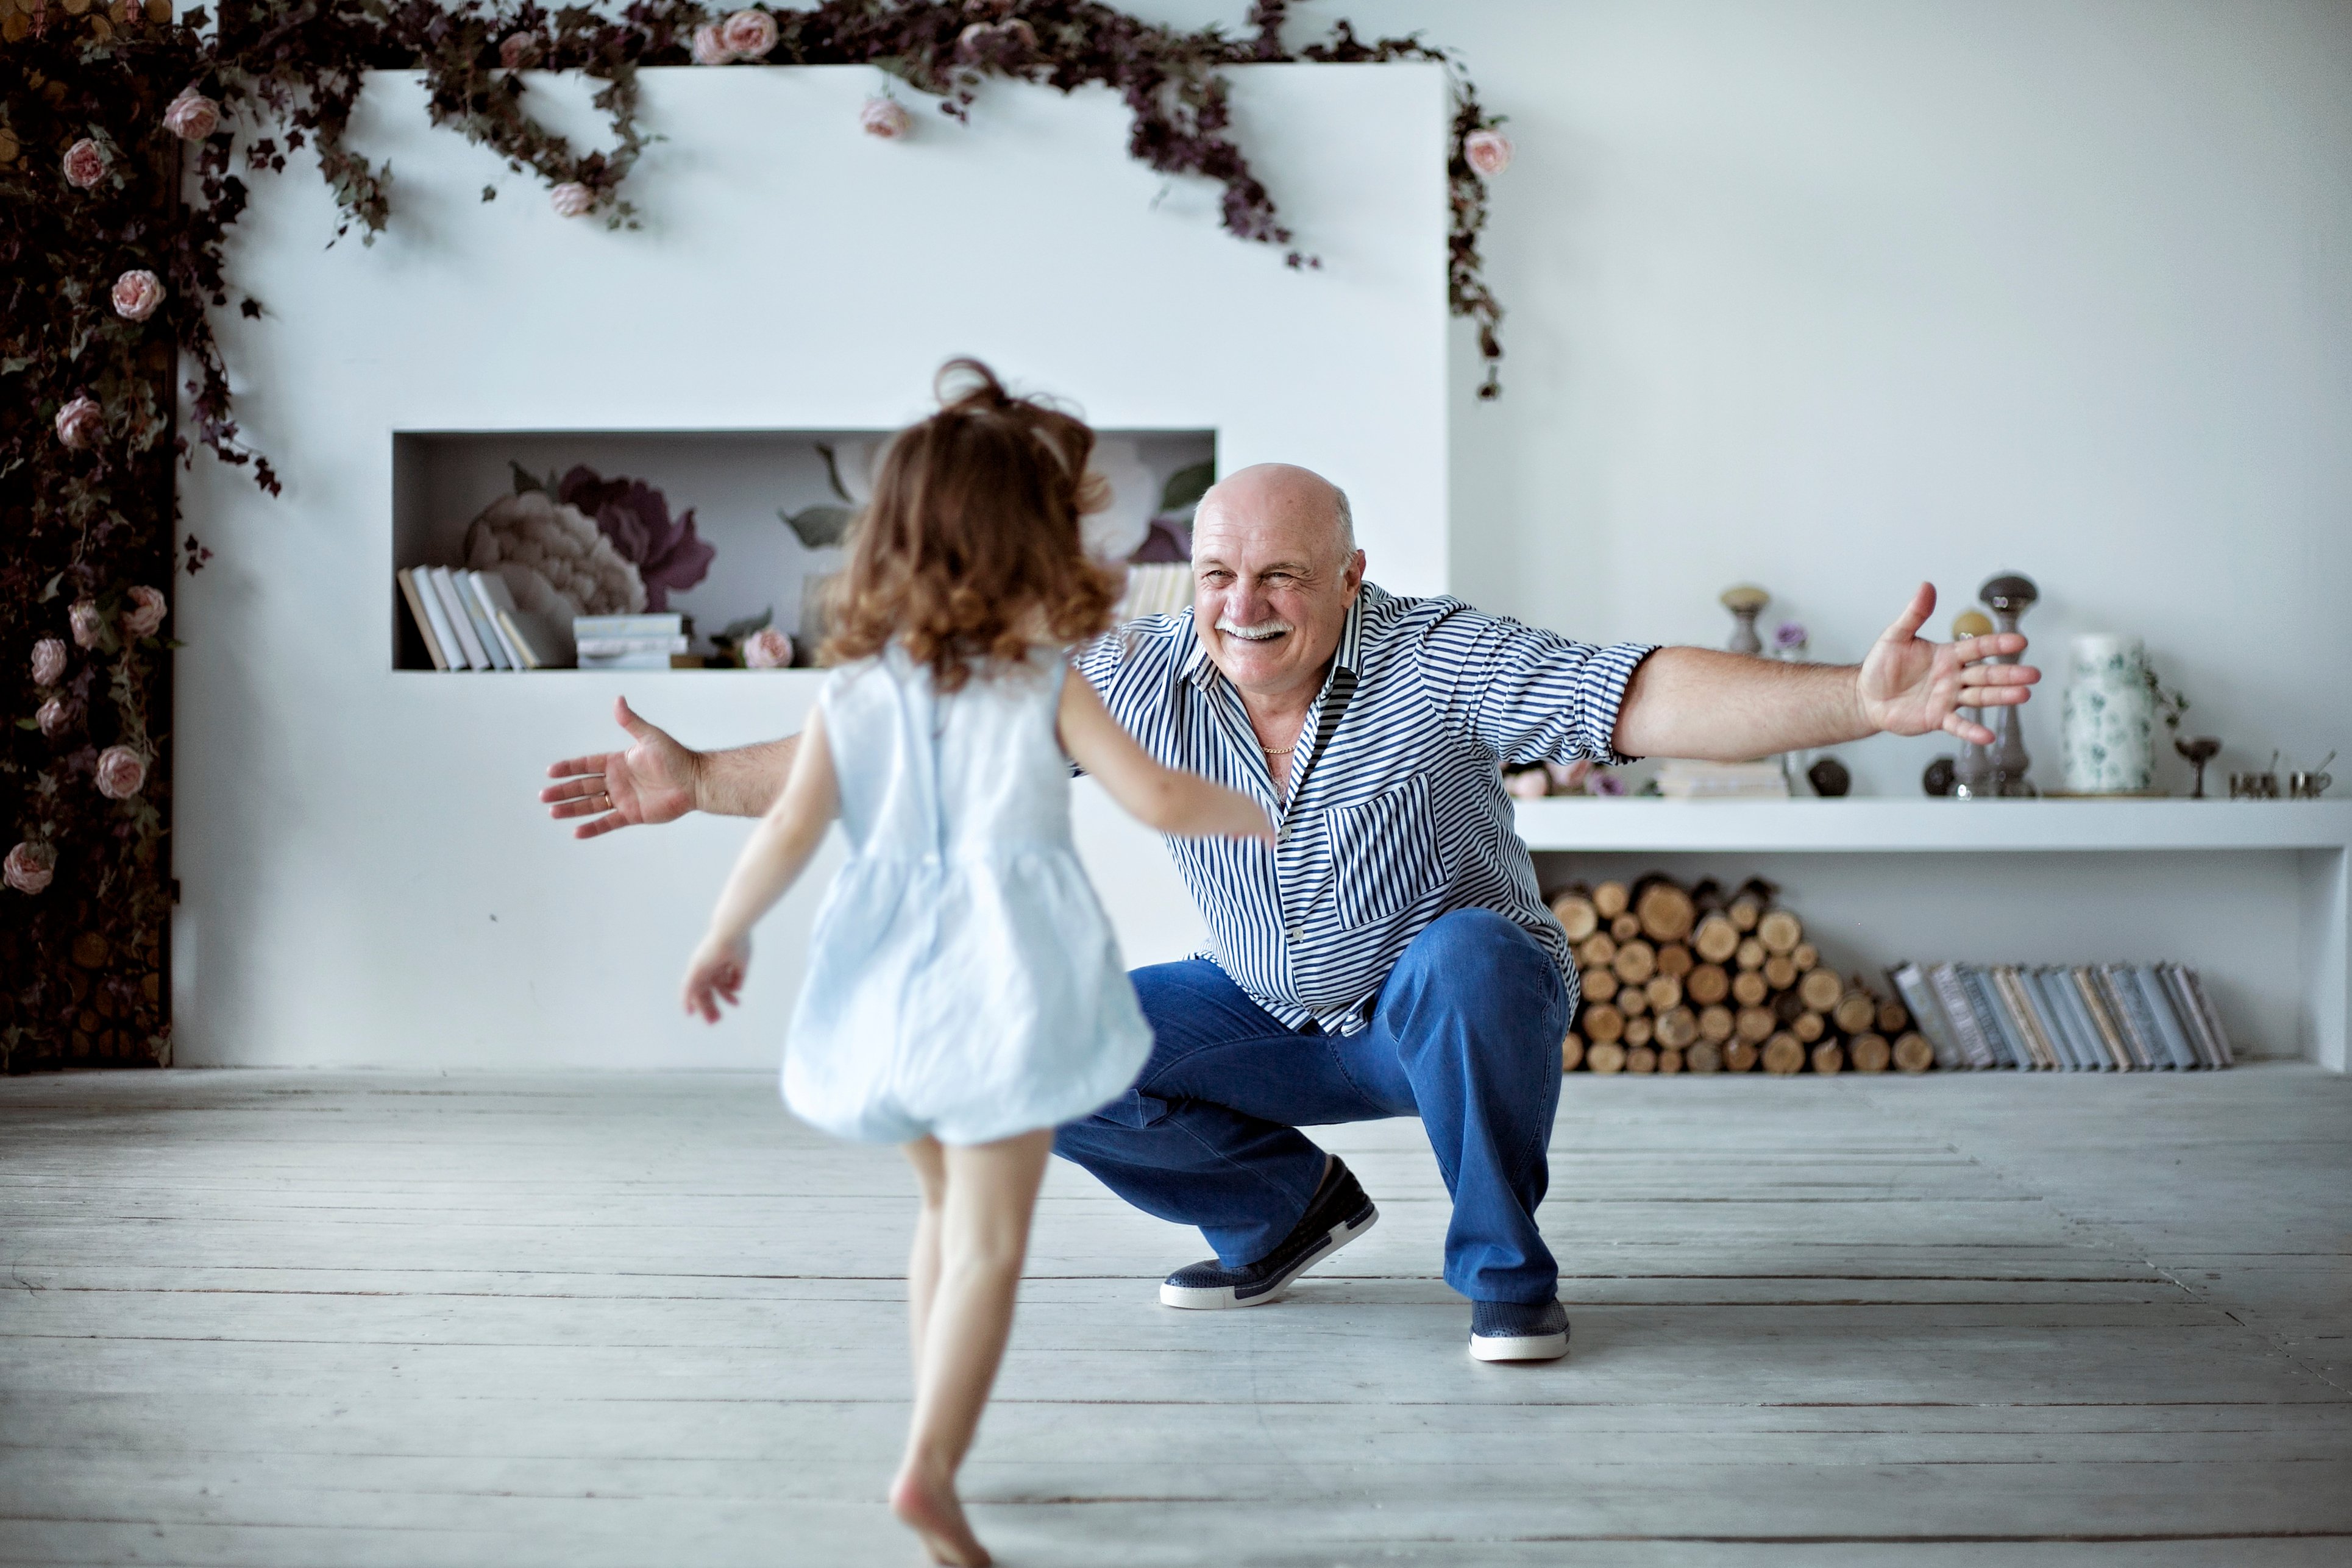 A little girl runs toward her grandfather | Source: Shutterstock